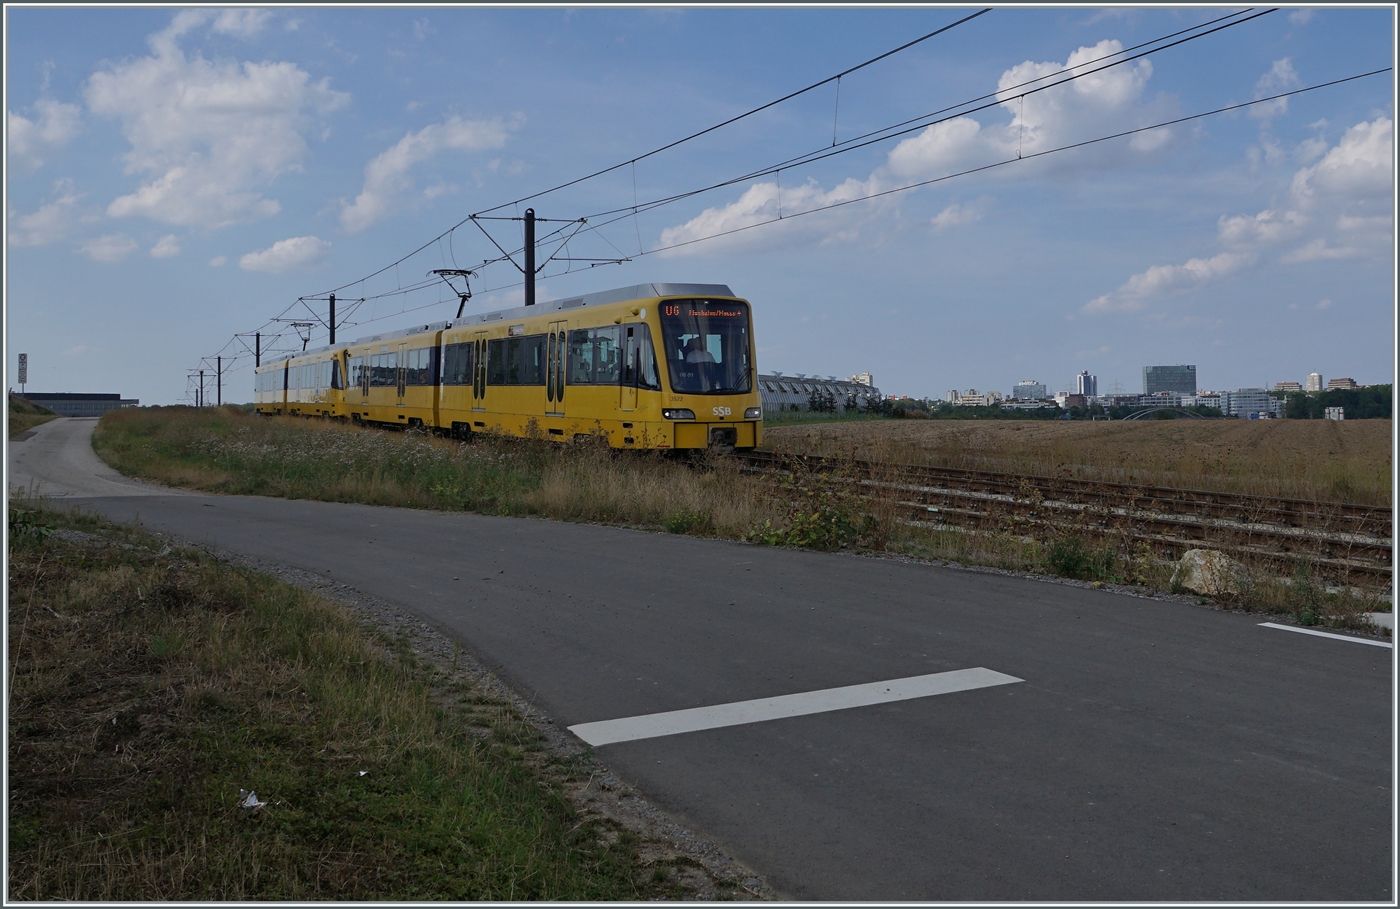 Auf den Fildern bei Echterdingen ist eine SSB U6 auf dem Weg zum Flughafen Messe, welches in wenigen Minuten erreicht wird. 

29. August 2022